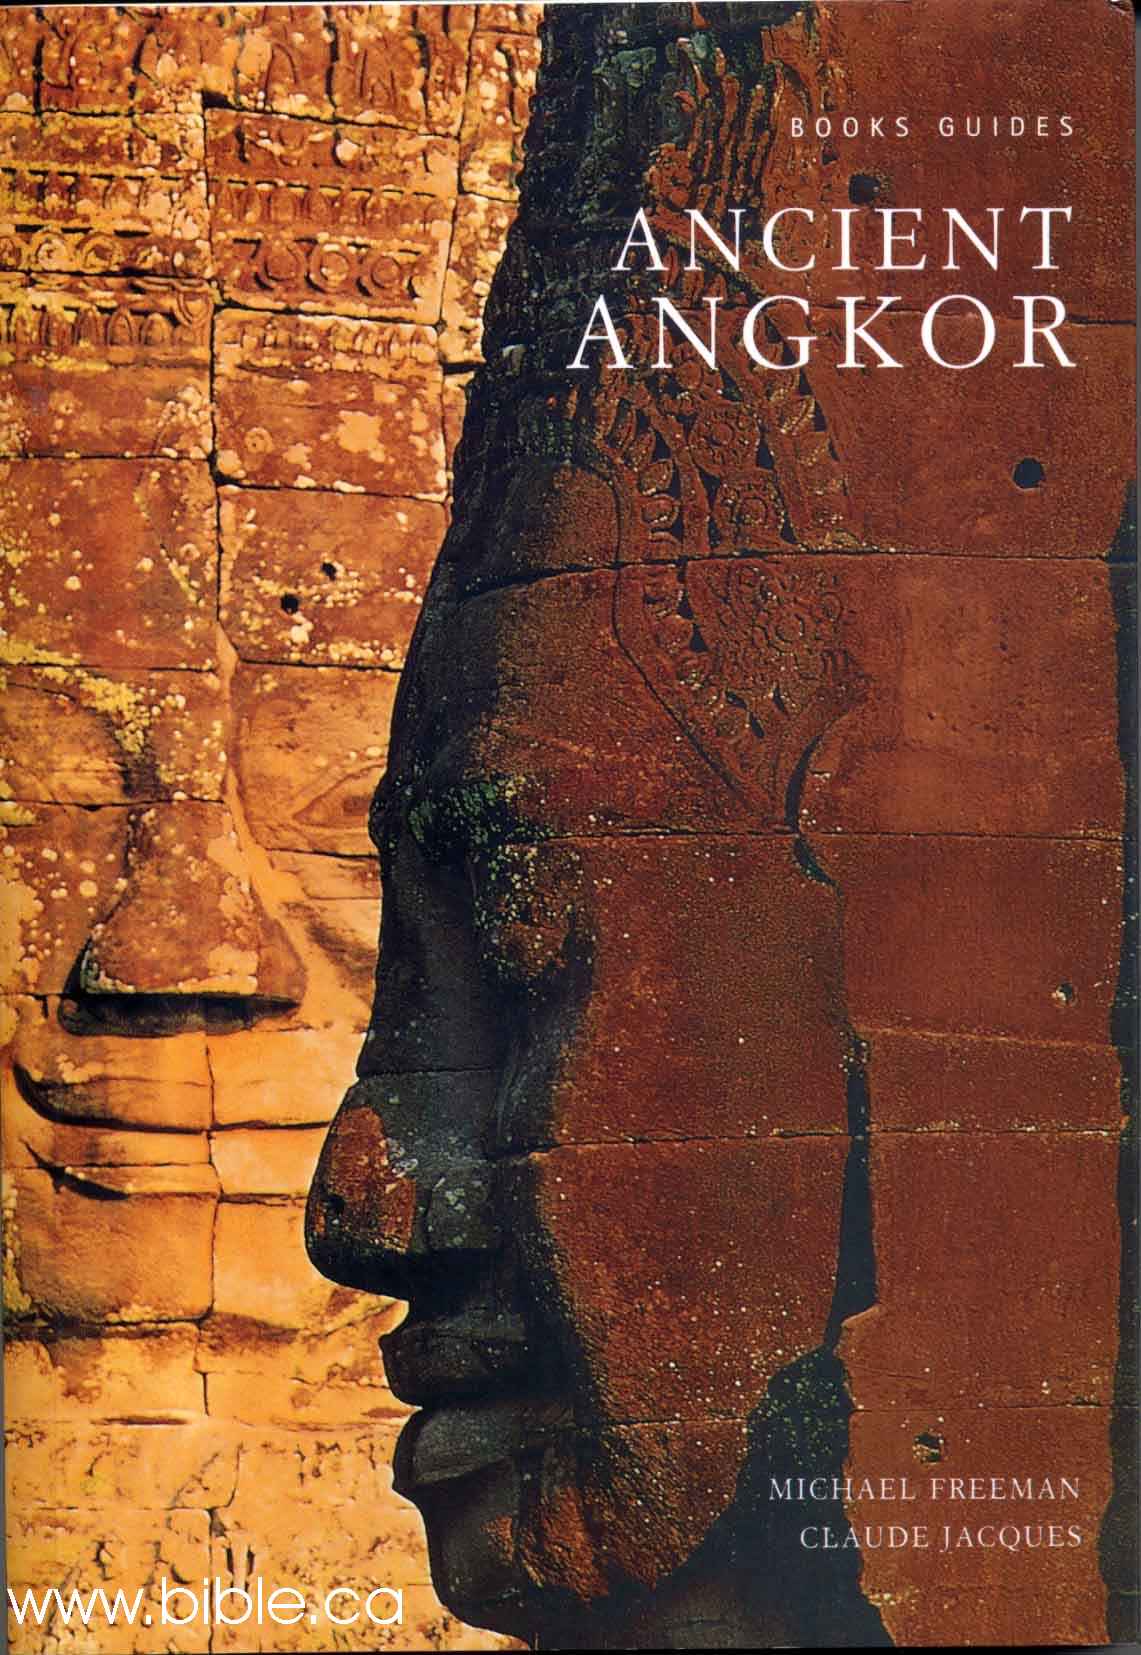 tracks-cambodia-ancient-angkor.jpg